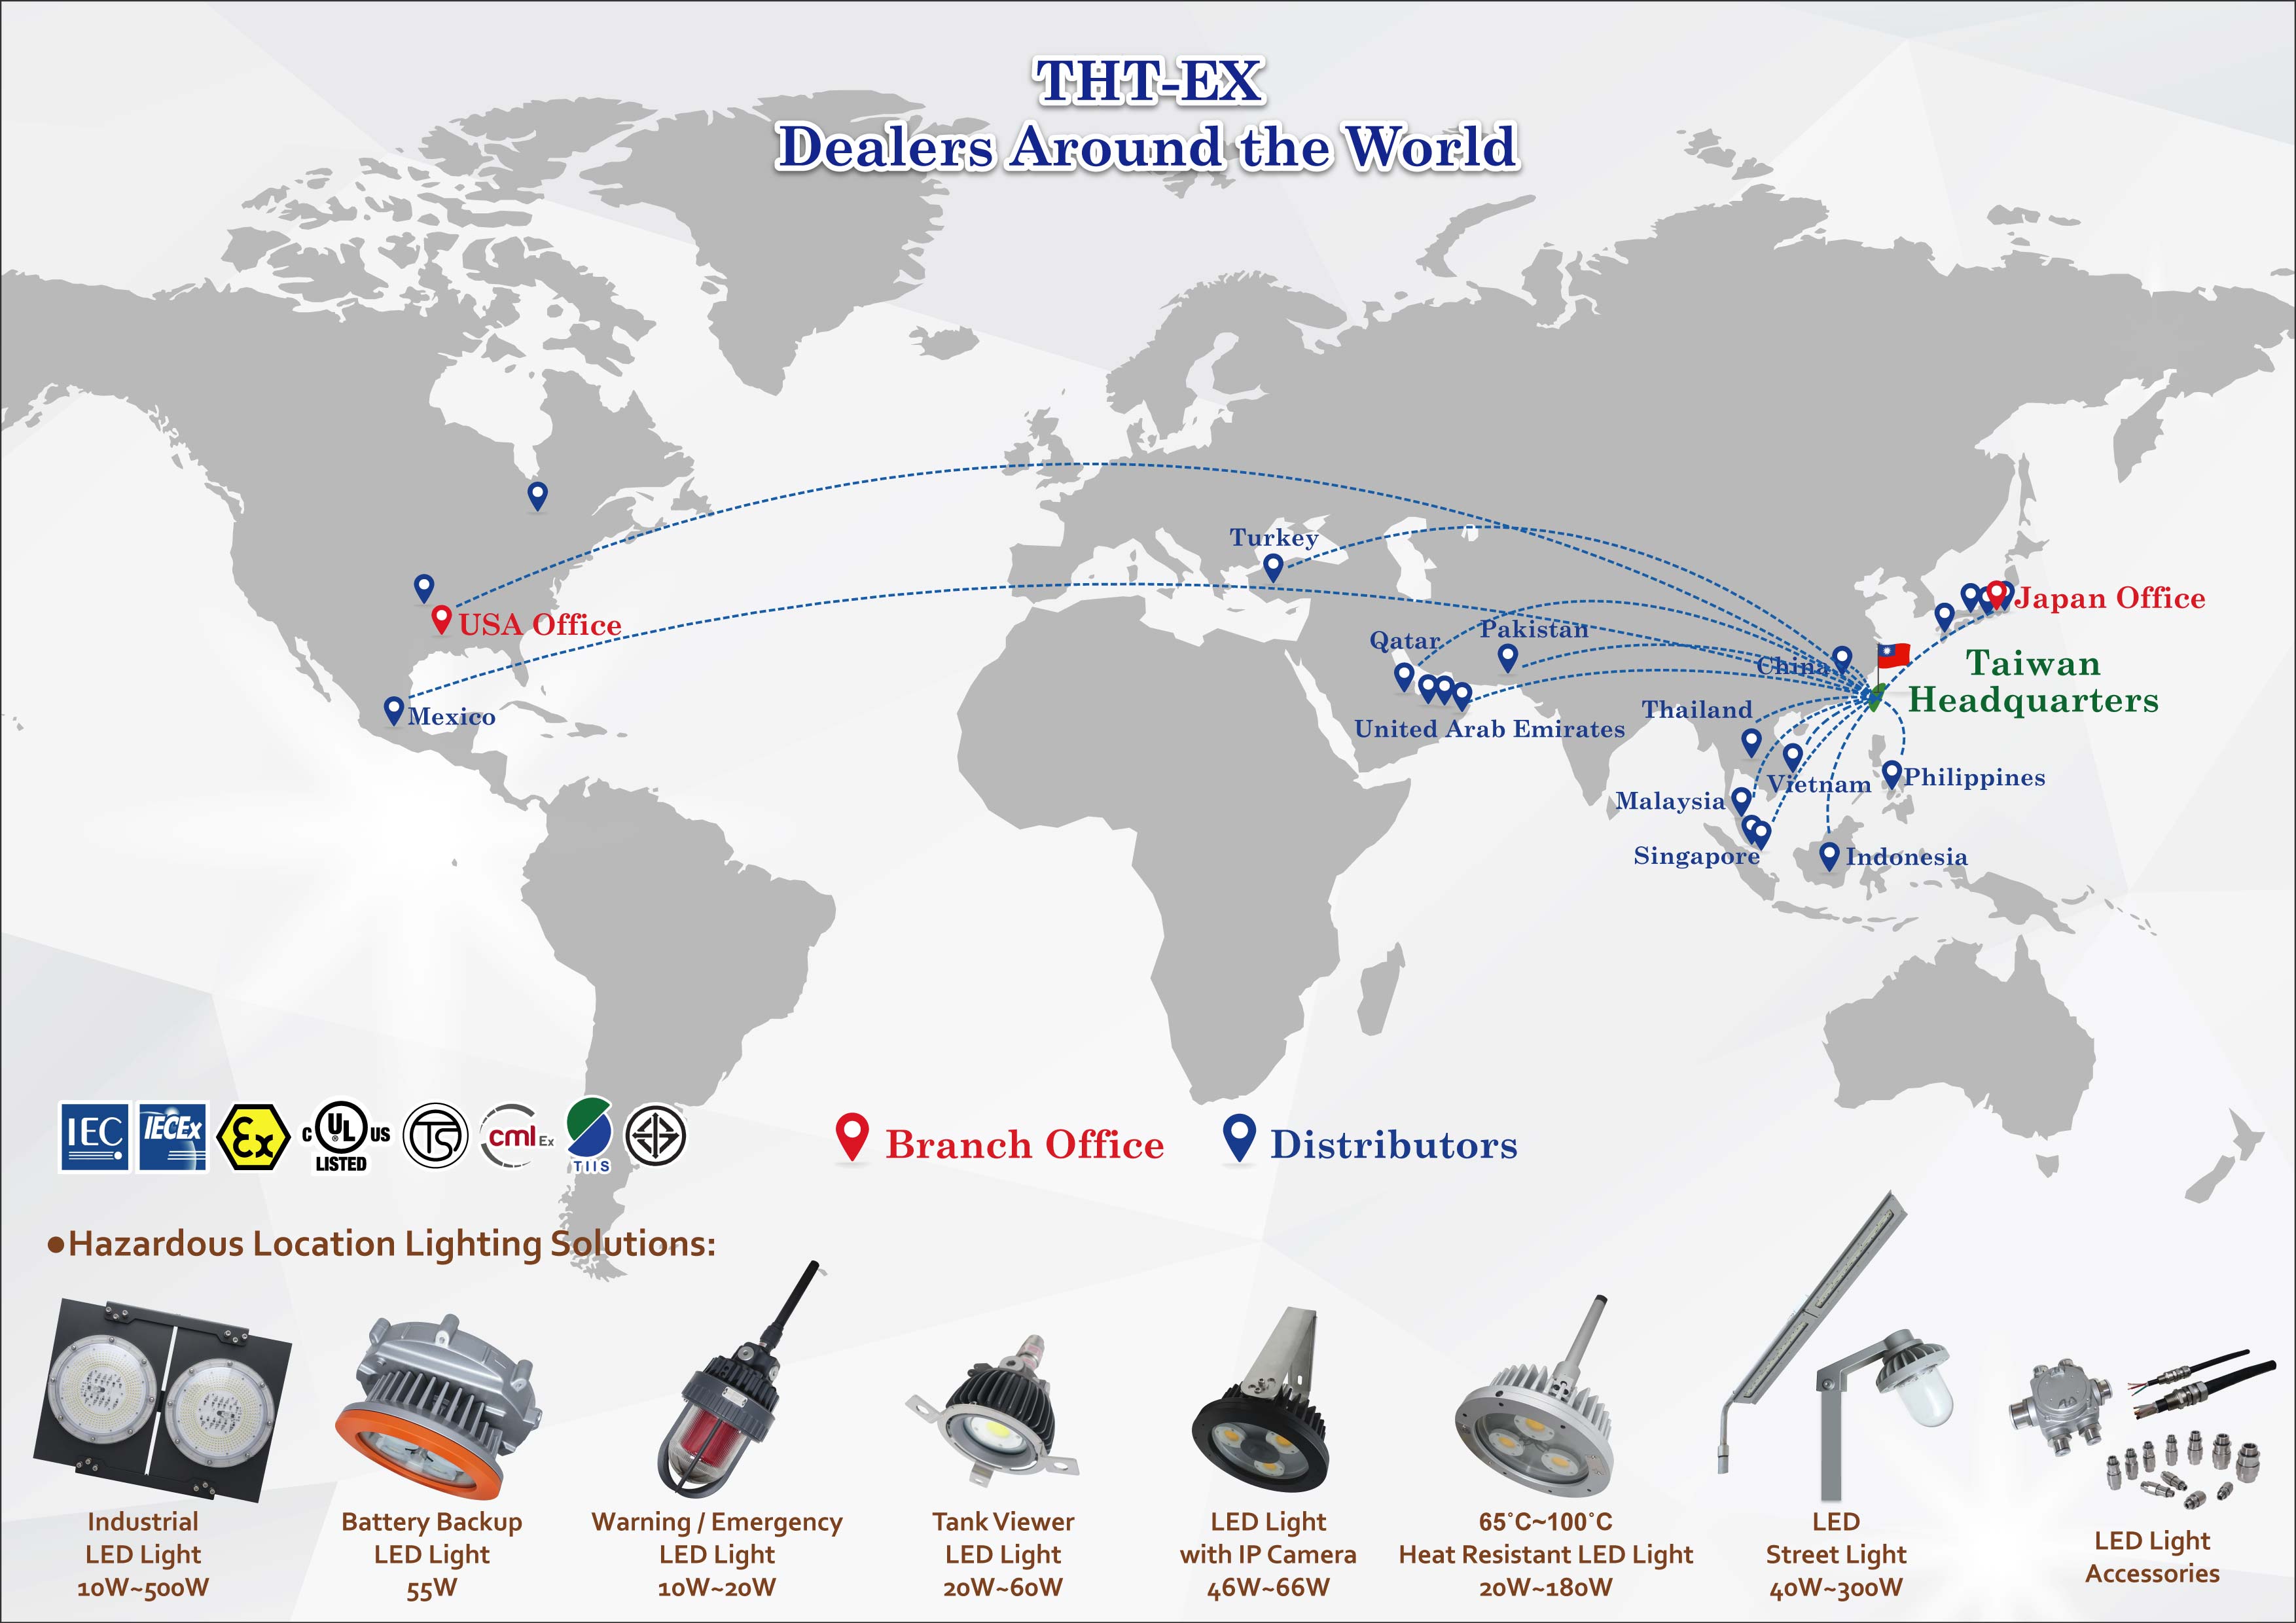  THT-EX Dealers Around the World